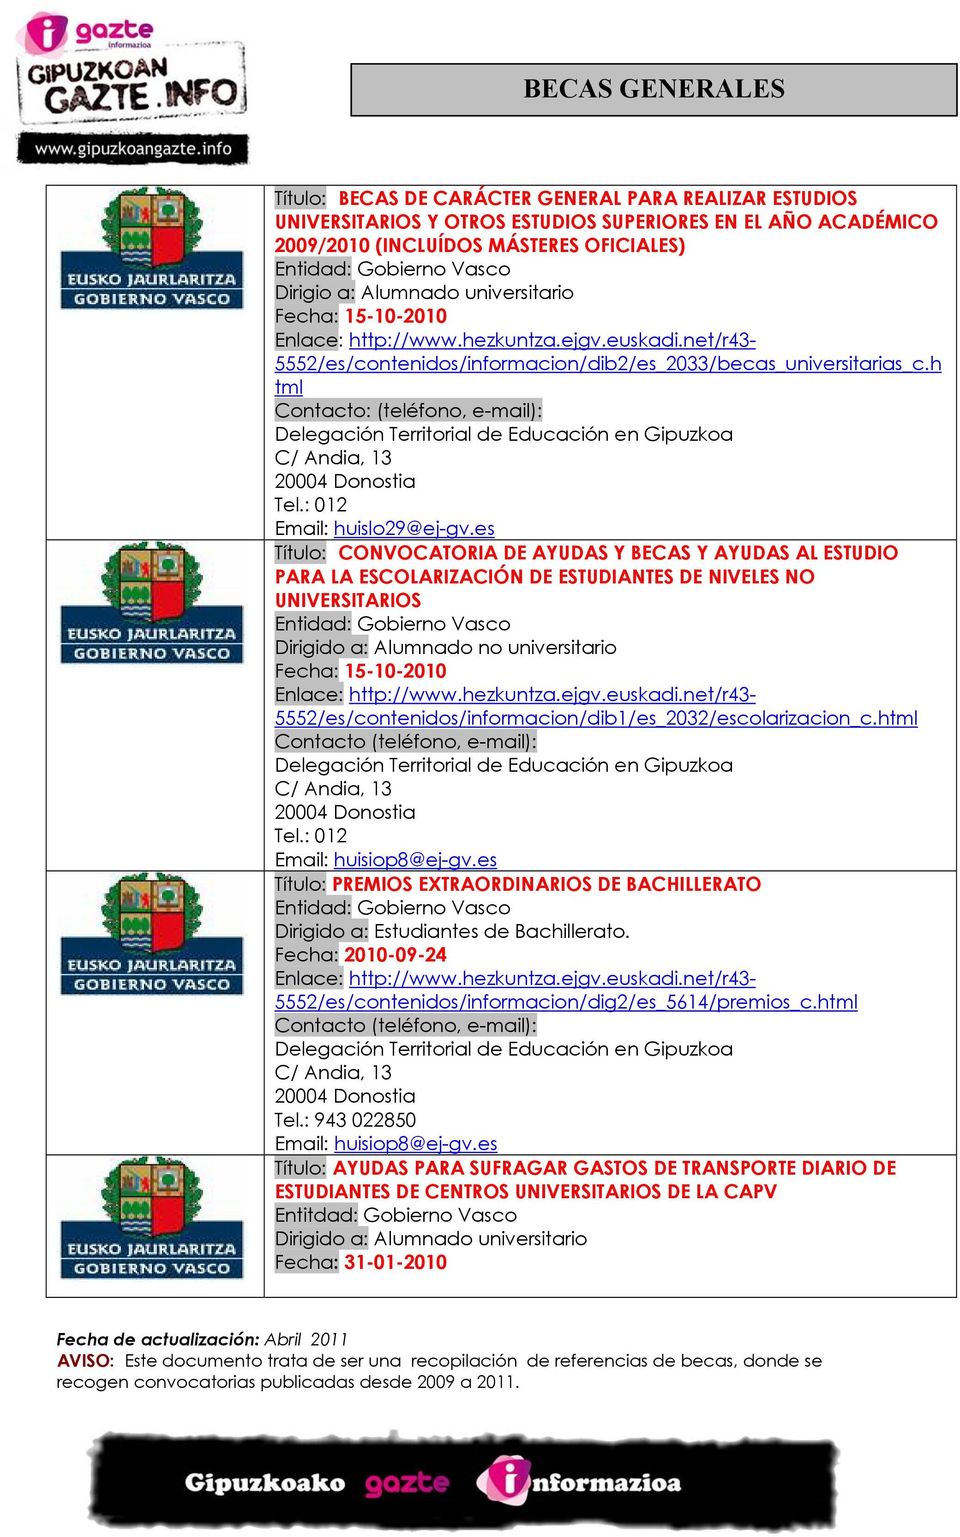 h tml (teléfono, e-mail): Delegación Territorial de Educación en Gipuzkoa C/ Andia, 13 20004 Donostia Tel.: 012 Email: huislo29@ej-gv.